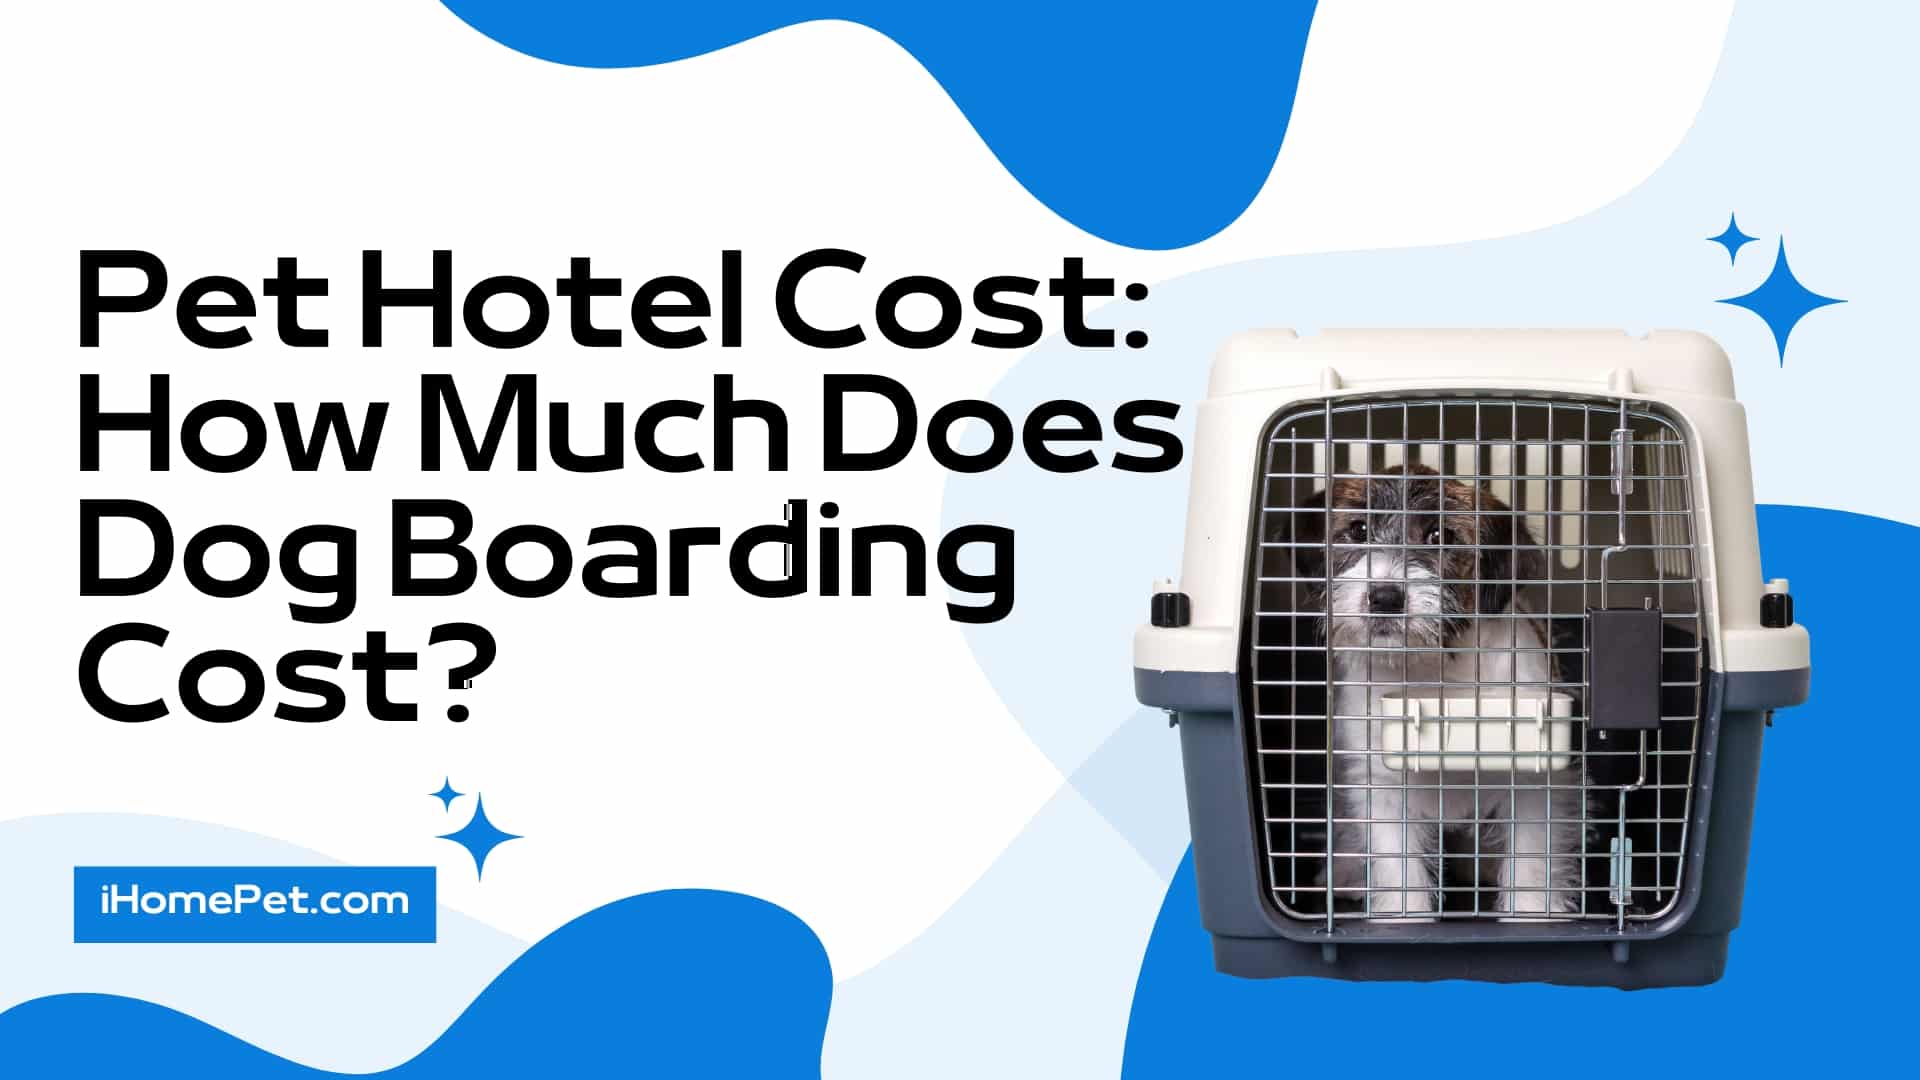 Pet boarding cost